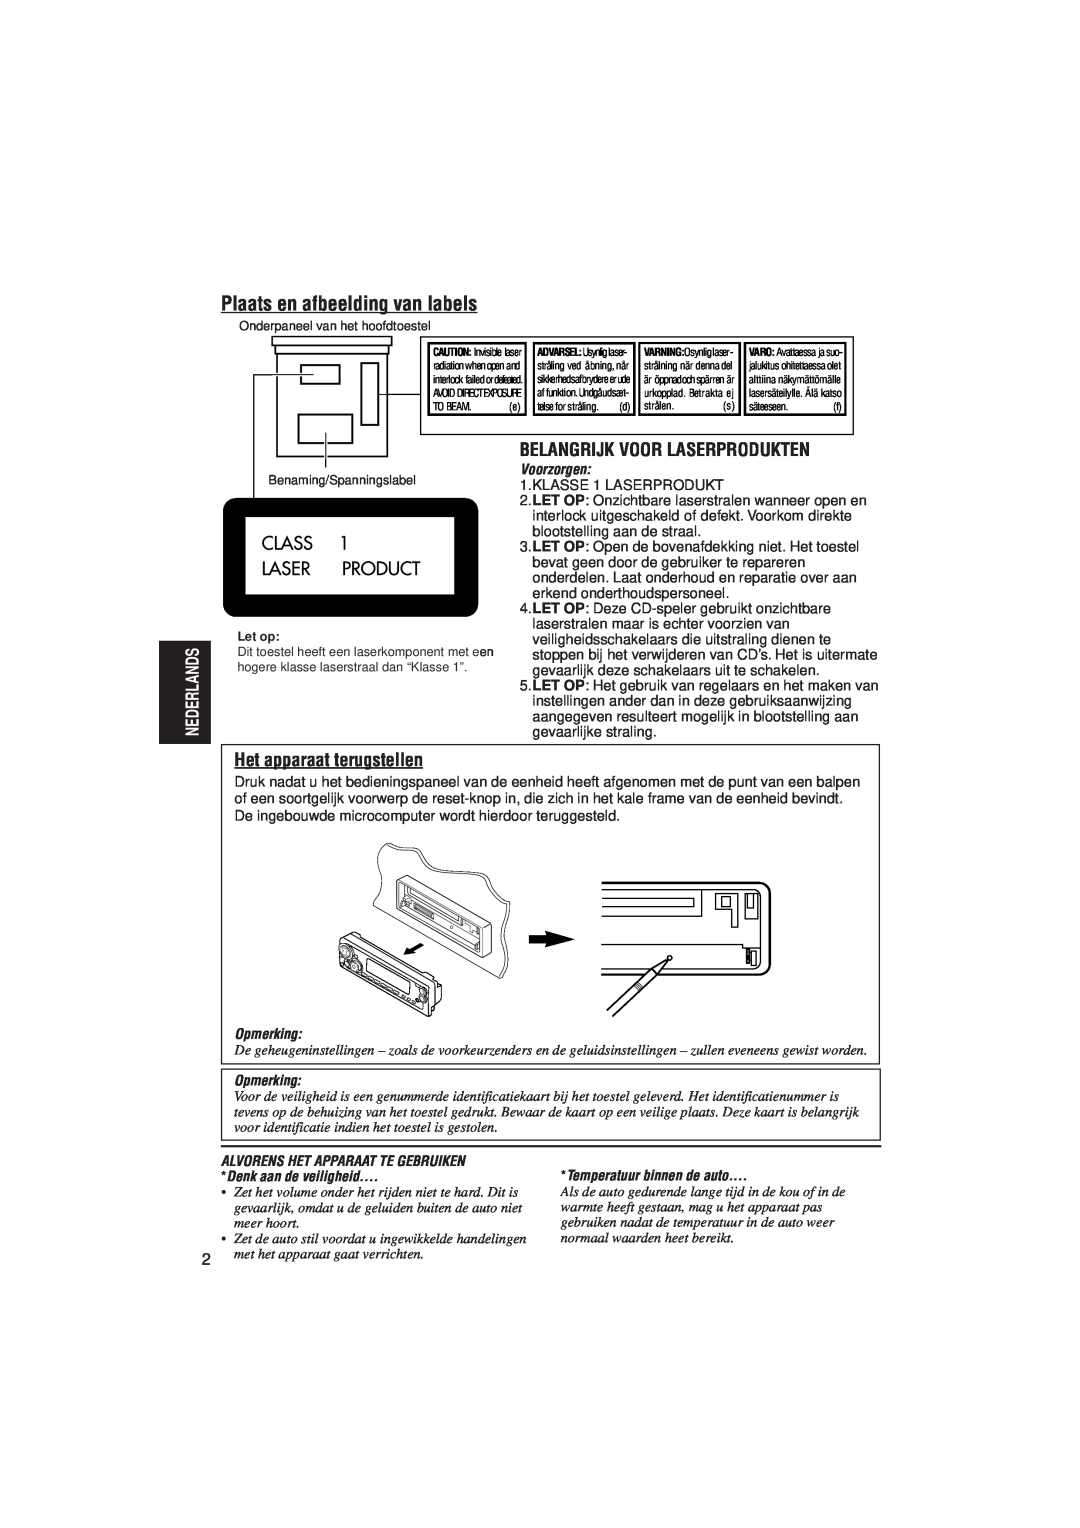 JVC KD-SX921R manual Plaats en afbeelding van labels, Belangrijk Voor Laserprodukten, Het apparaat terugstellen, Voorzorgen 